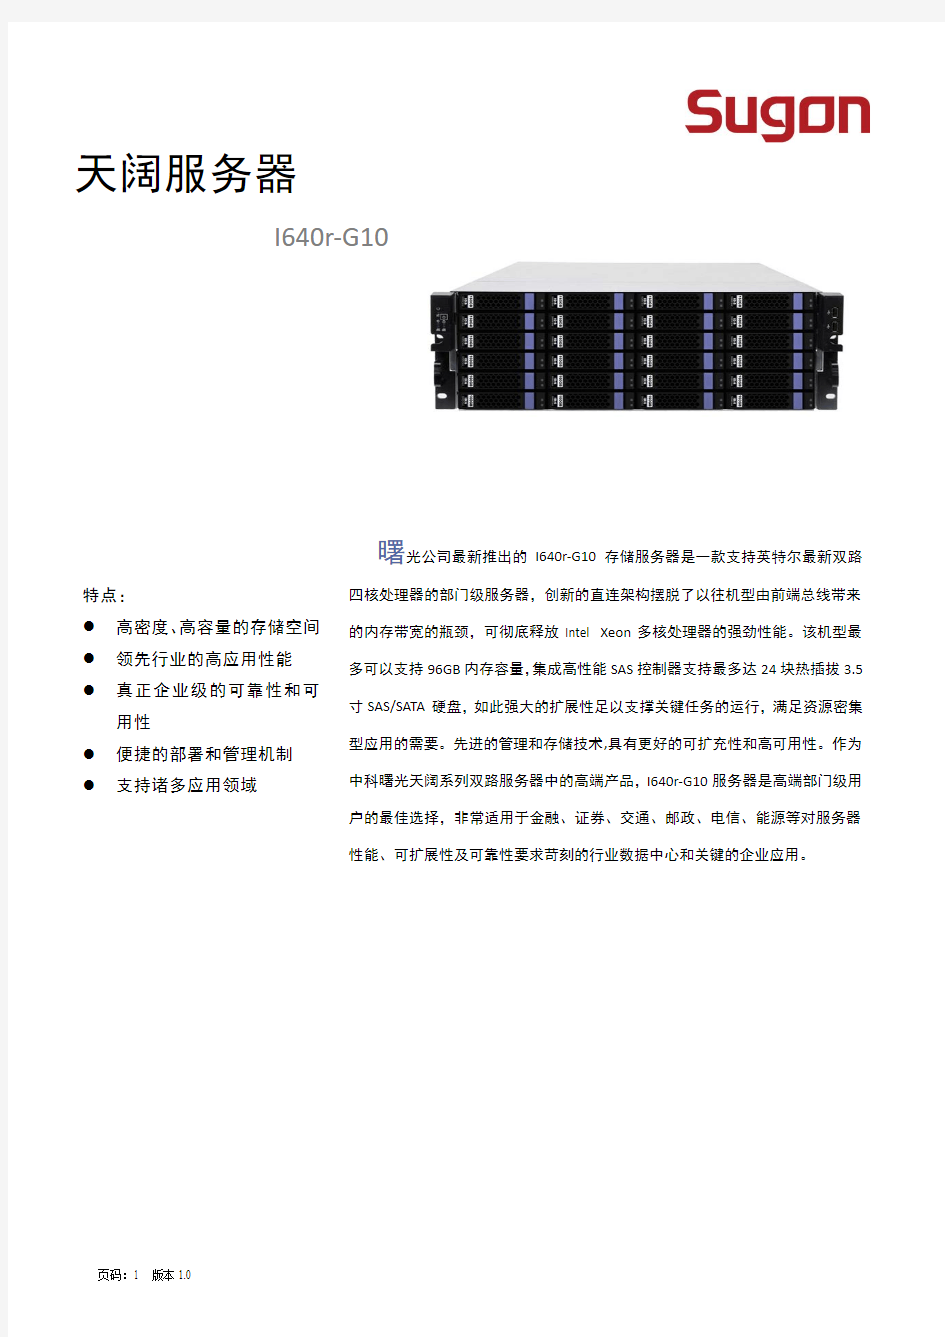 中科曙光天阔I640r-G10服务器技术白皮书V1.0